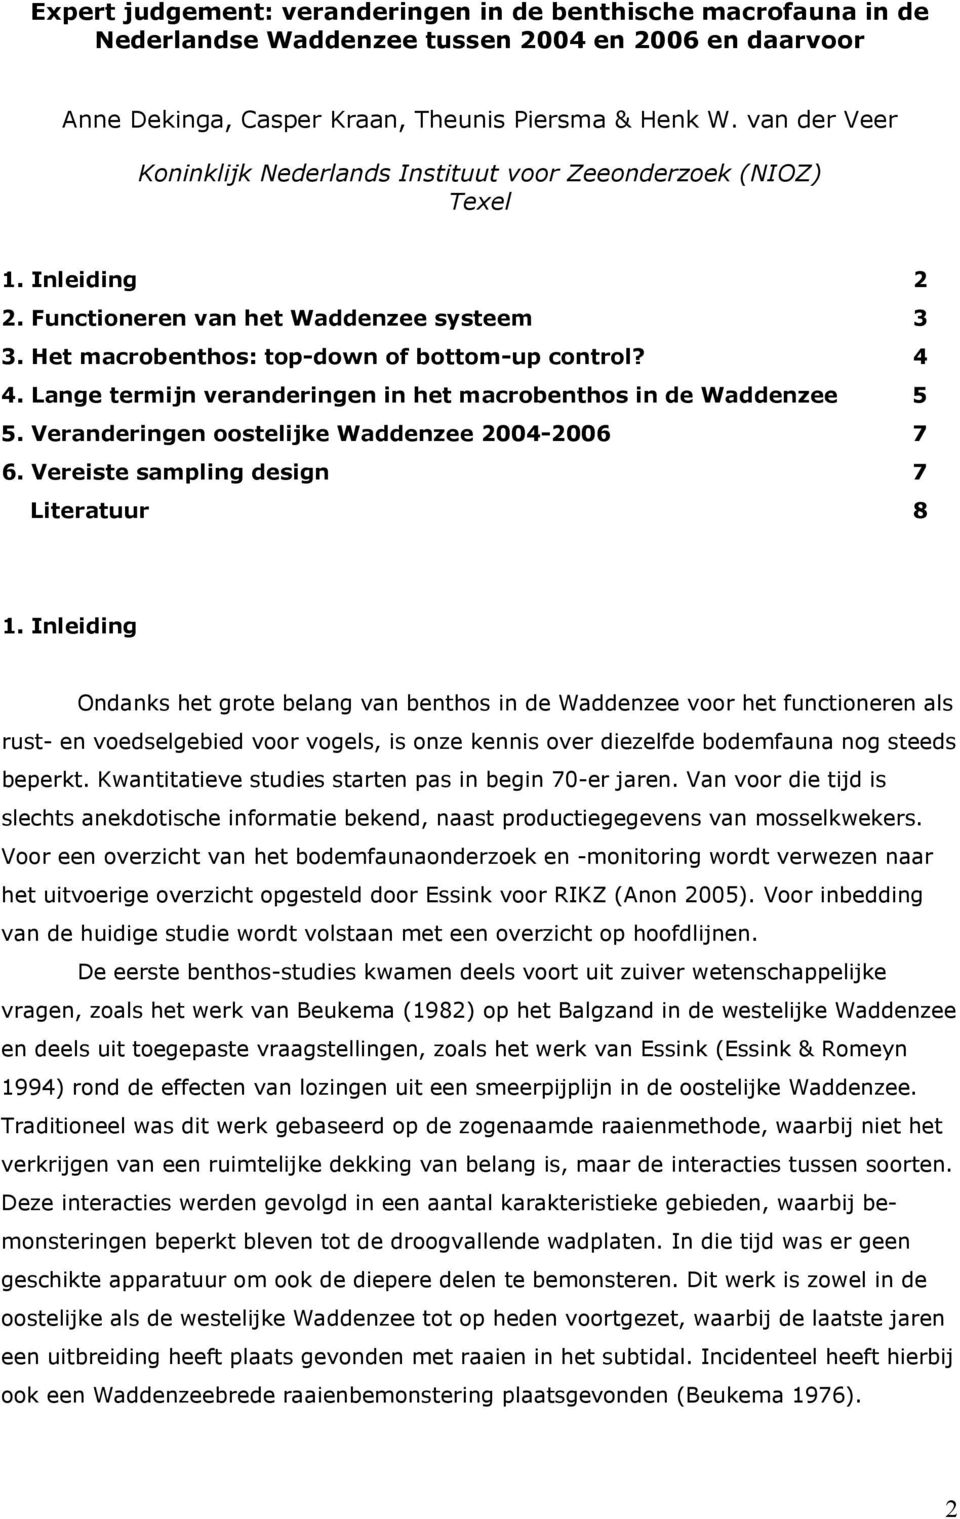 Lange termijn veranderingen in het macrobenthos in de Waddenzee 5 5. Veranderingen oostelijke Waddenzee 2004-2006 7 6. Vereiste sampling design 7 Literatuur 8 1.